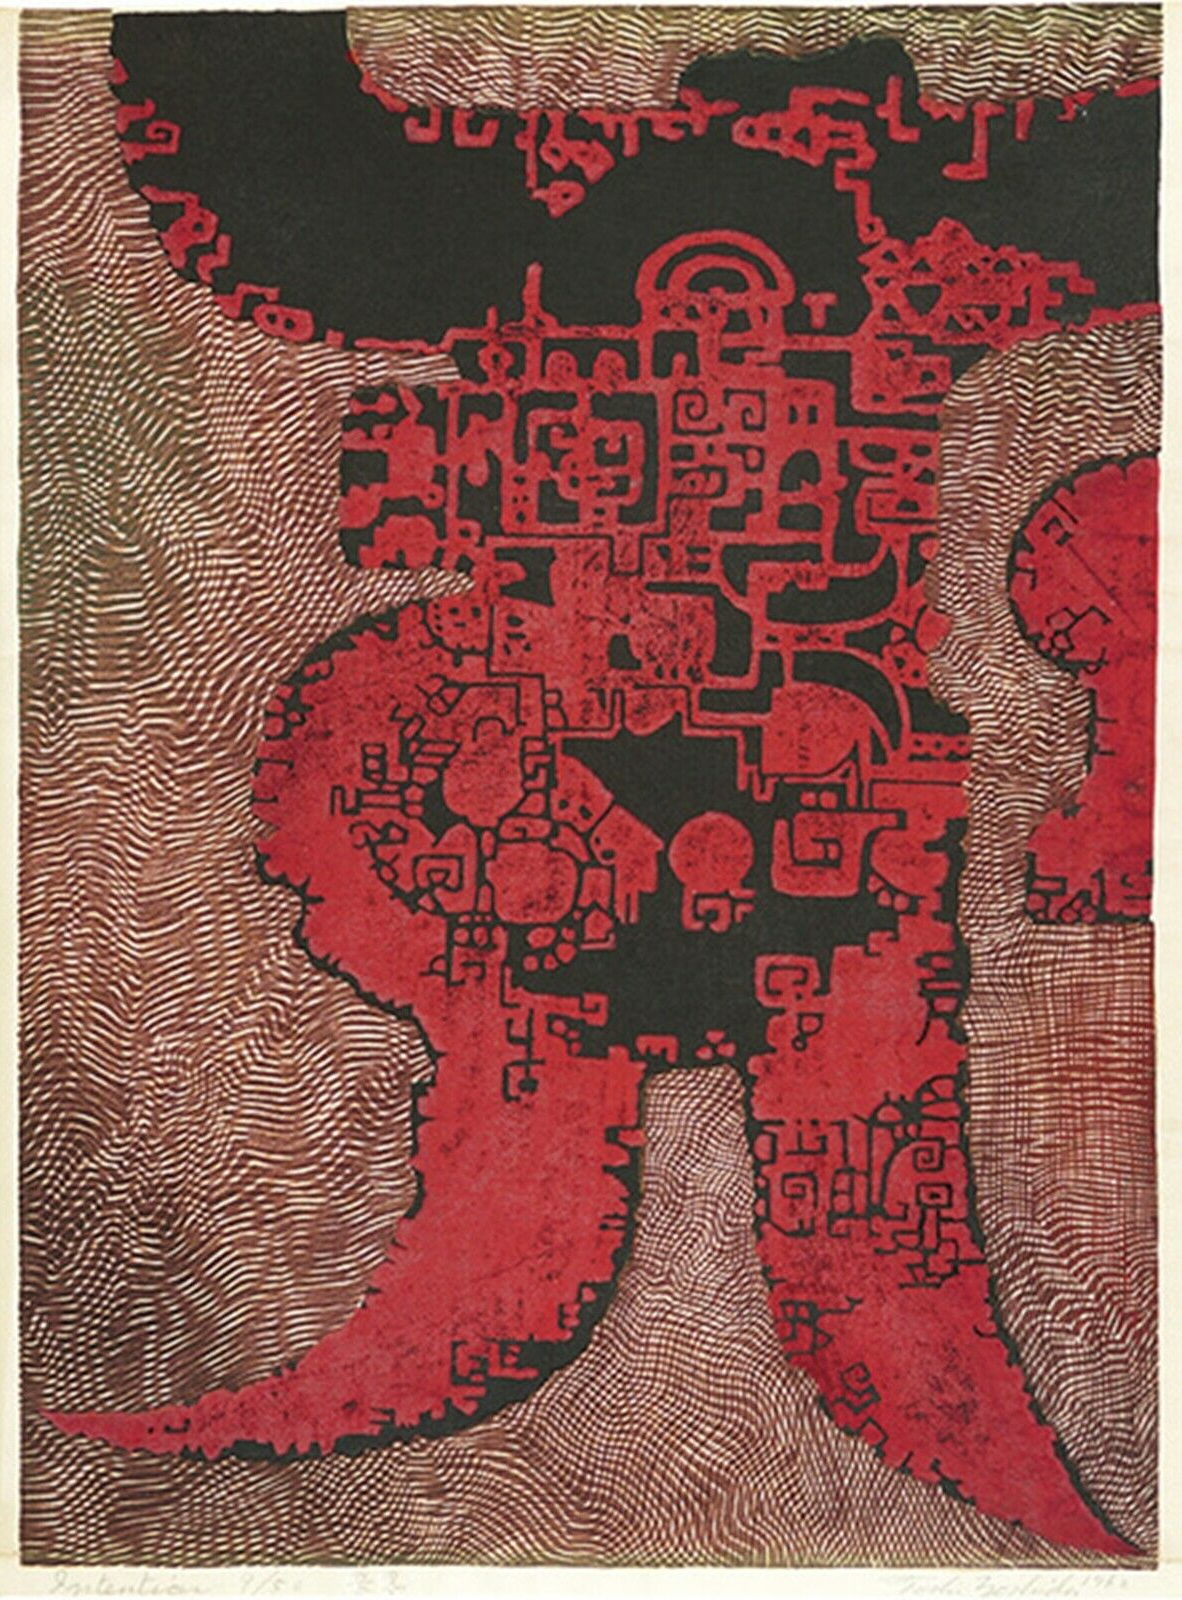 Toshi Yoshida “Intention” 1962 woodblock print